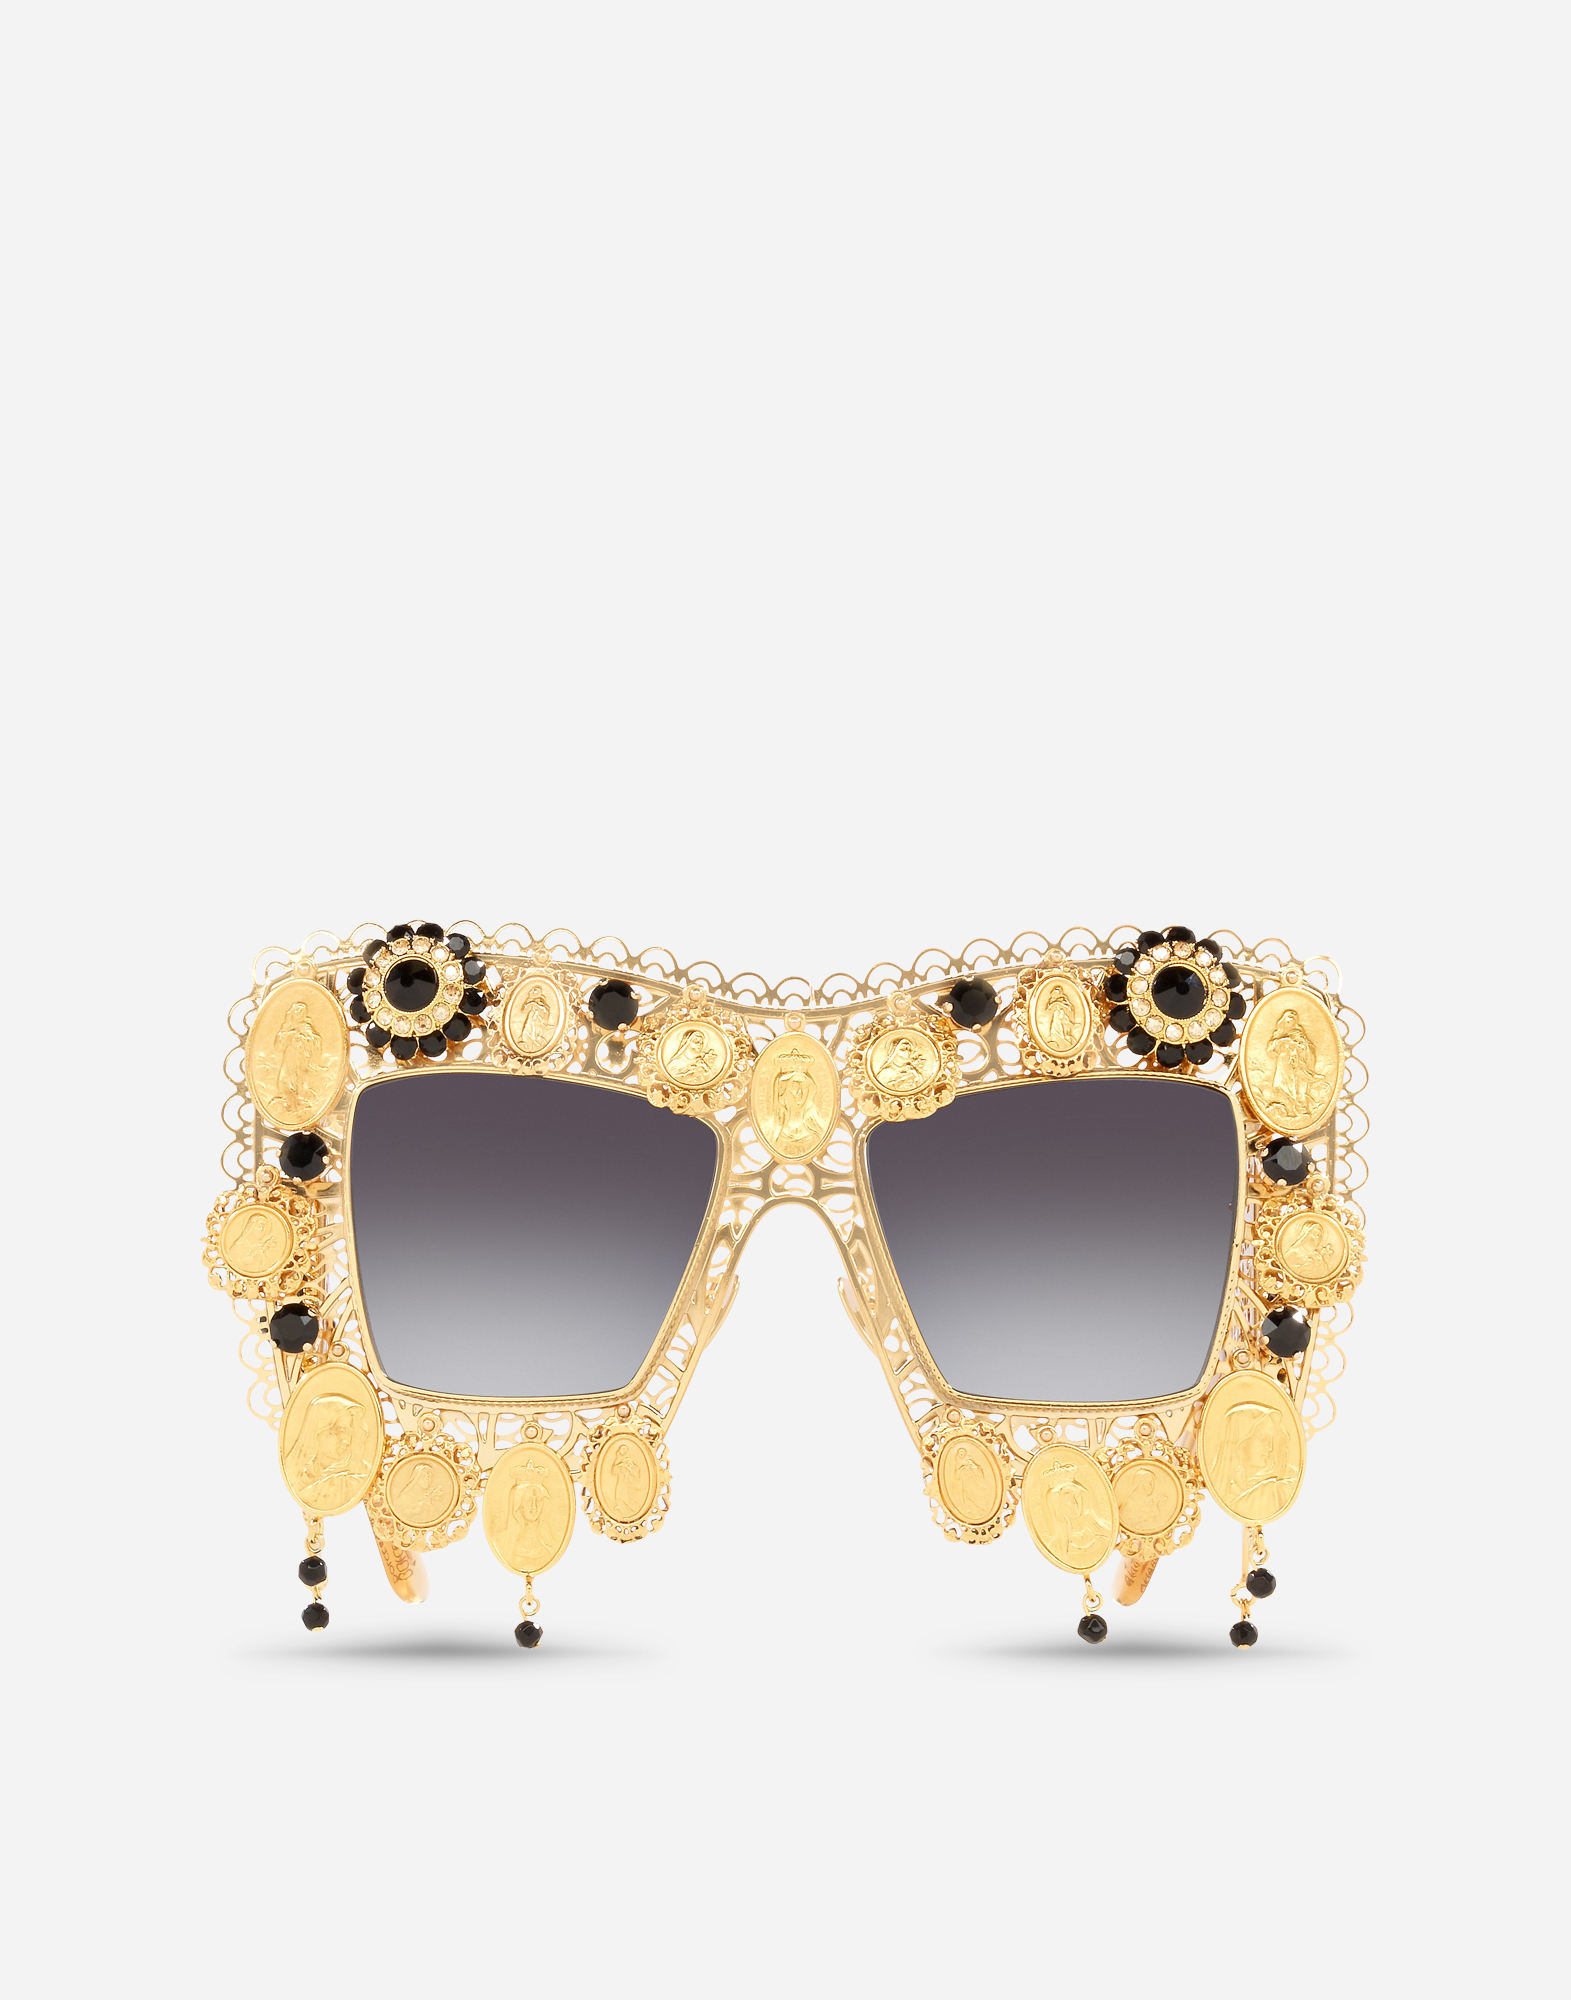 Devotion sunglasses in Gold